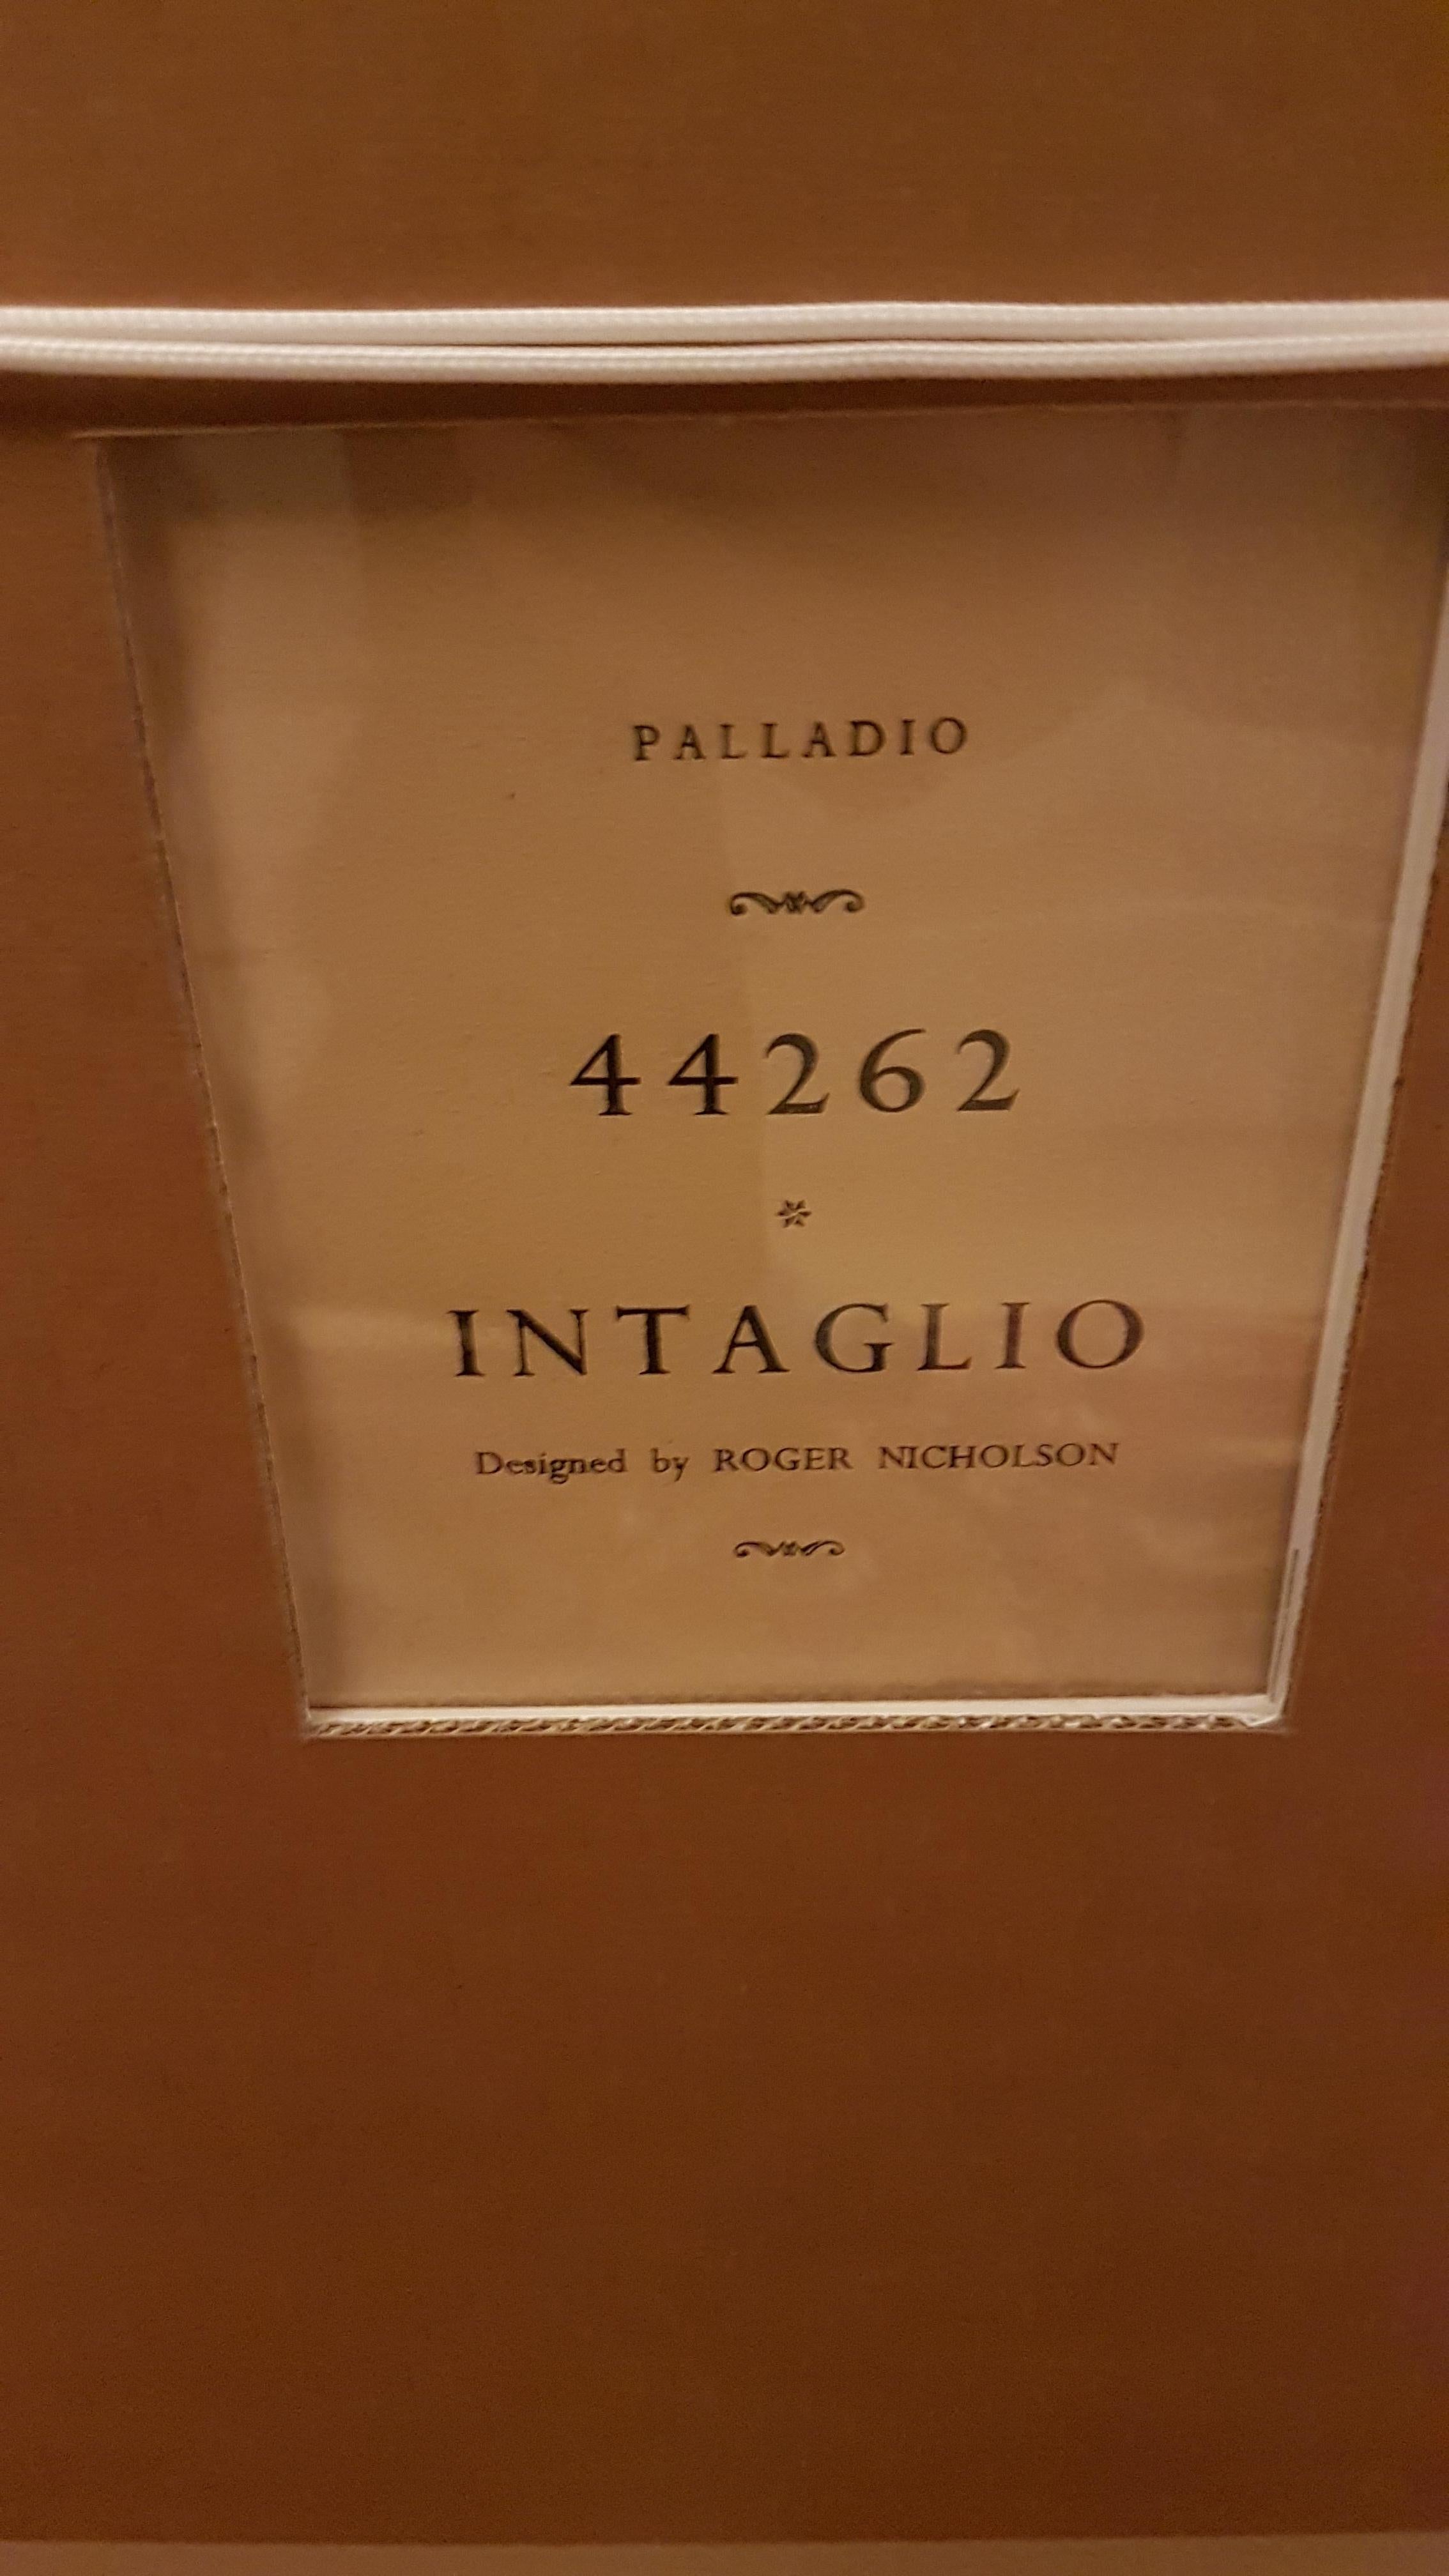 Original 1955 Palladio Wallpaper Sample 'Intaglio' Designed by Roger Nicholson In Good Condition For Sale In Bodicote, Oxfordshire